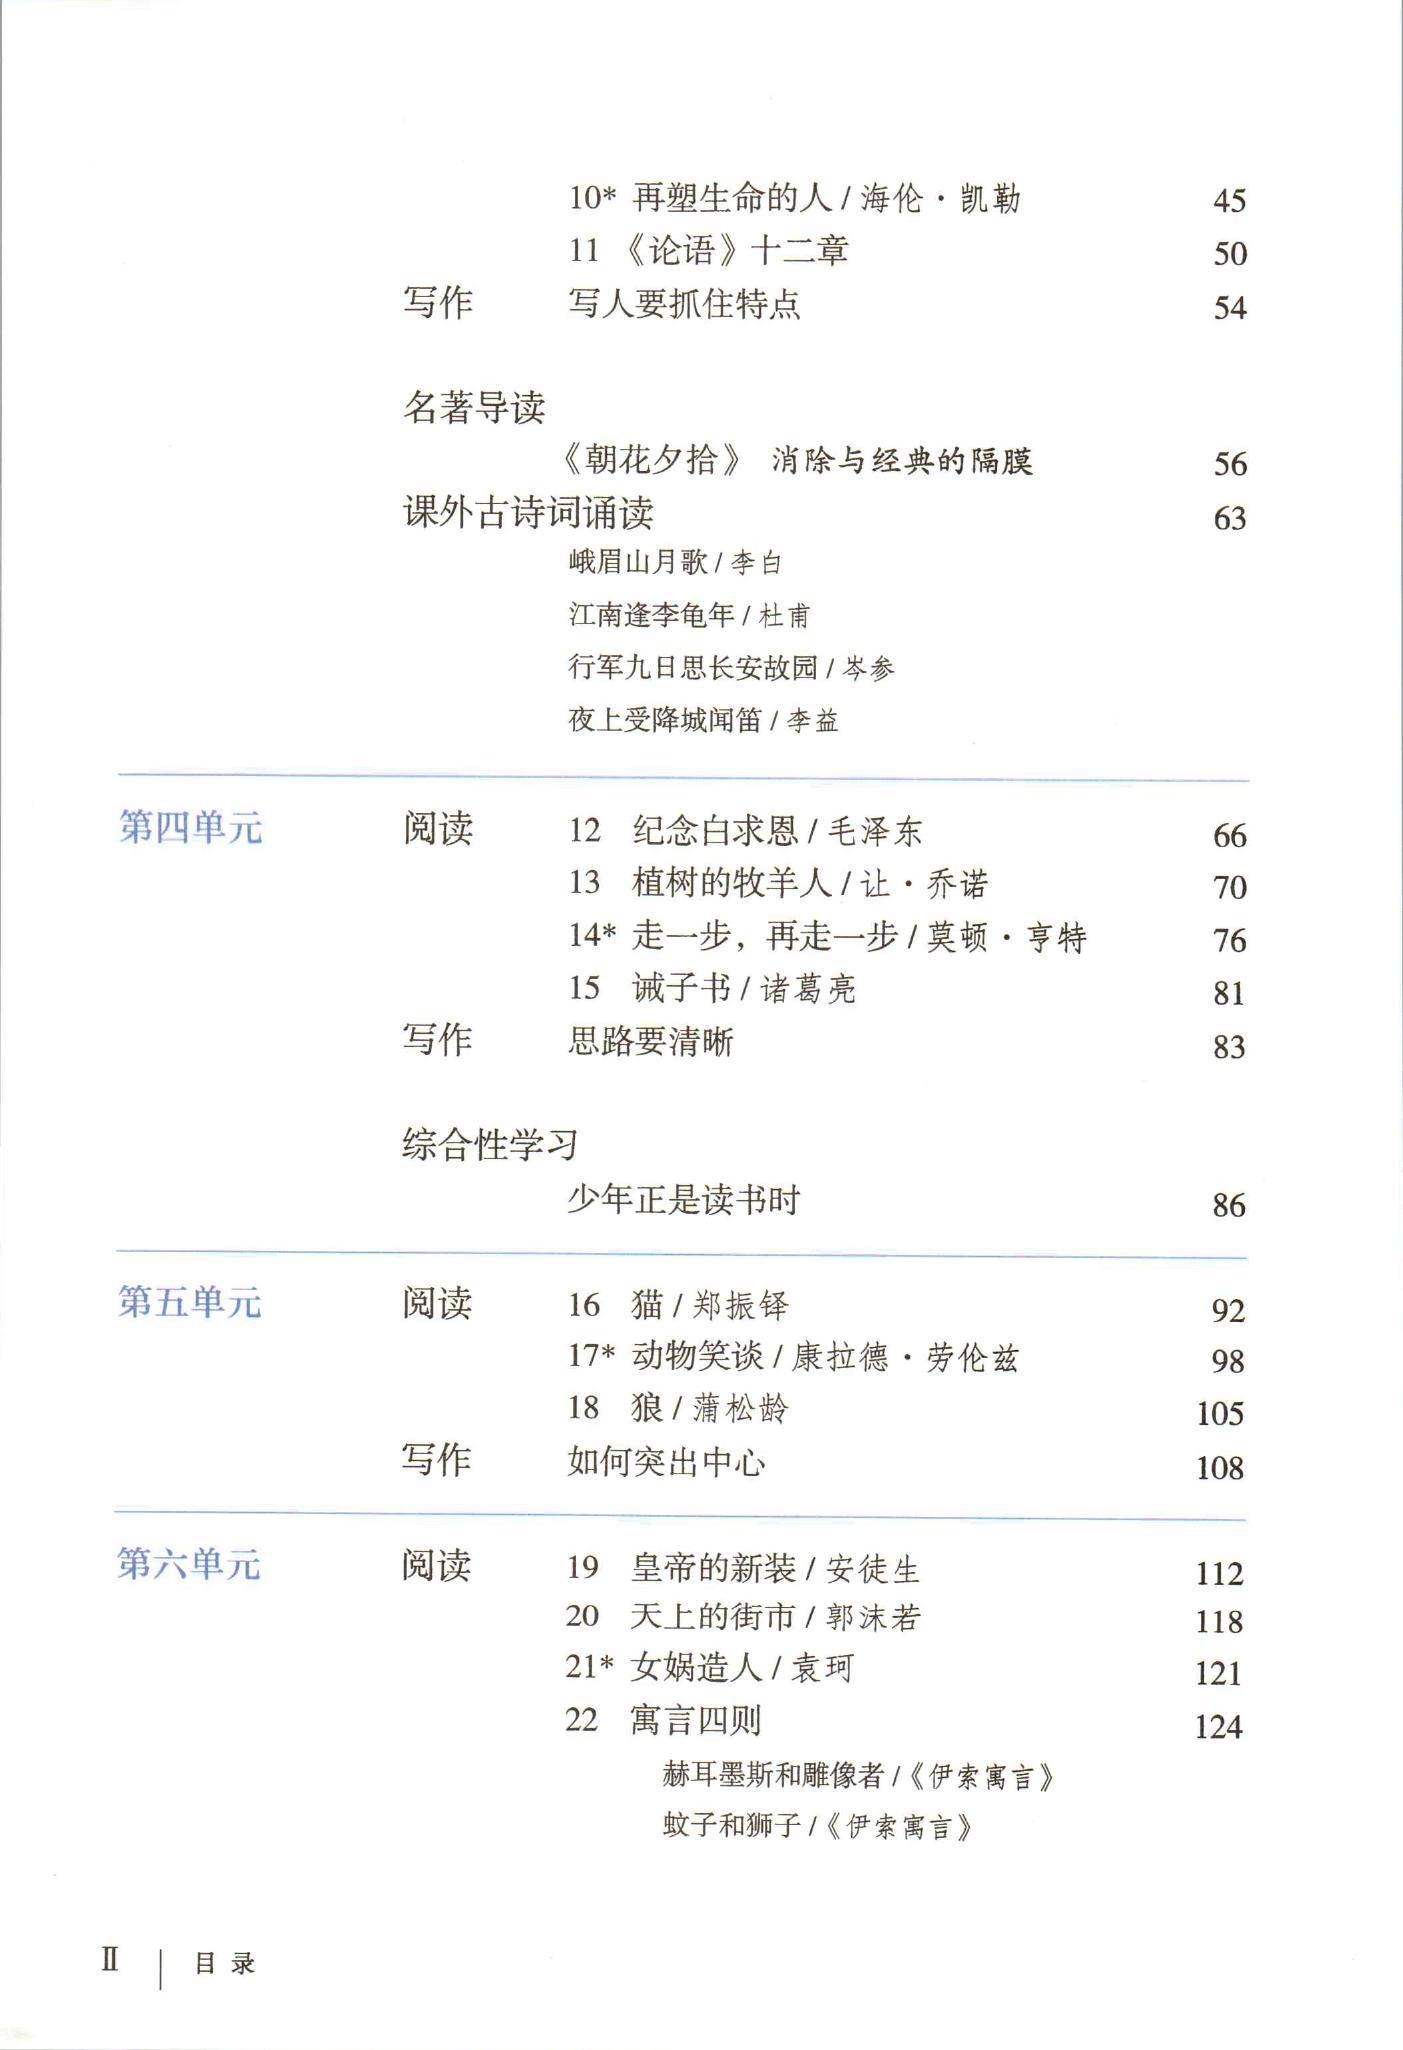 2021年初中语文七年级上册(五四学制)课本教材及相关资源介绍